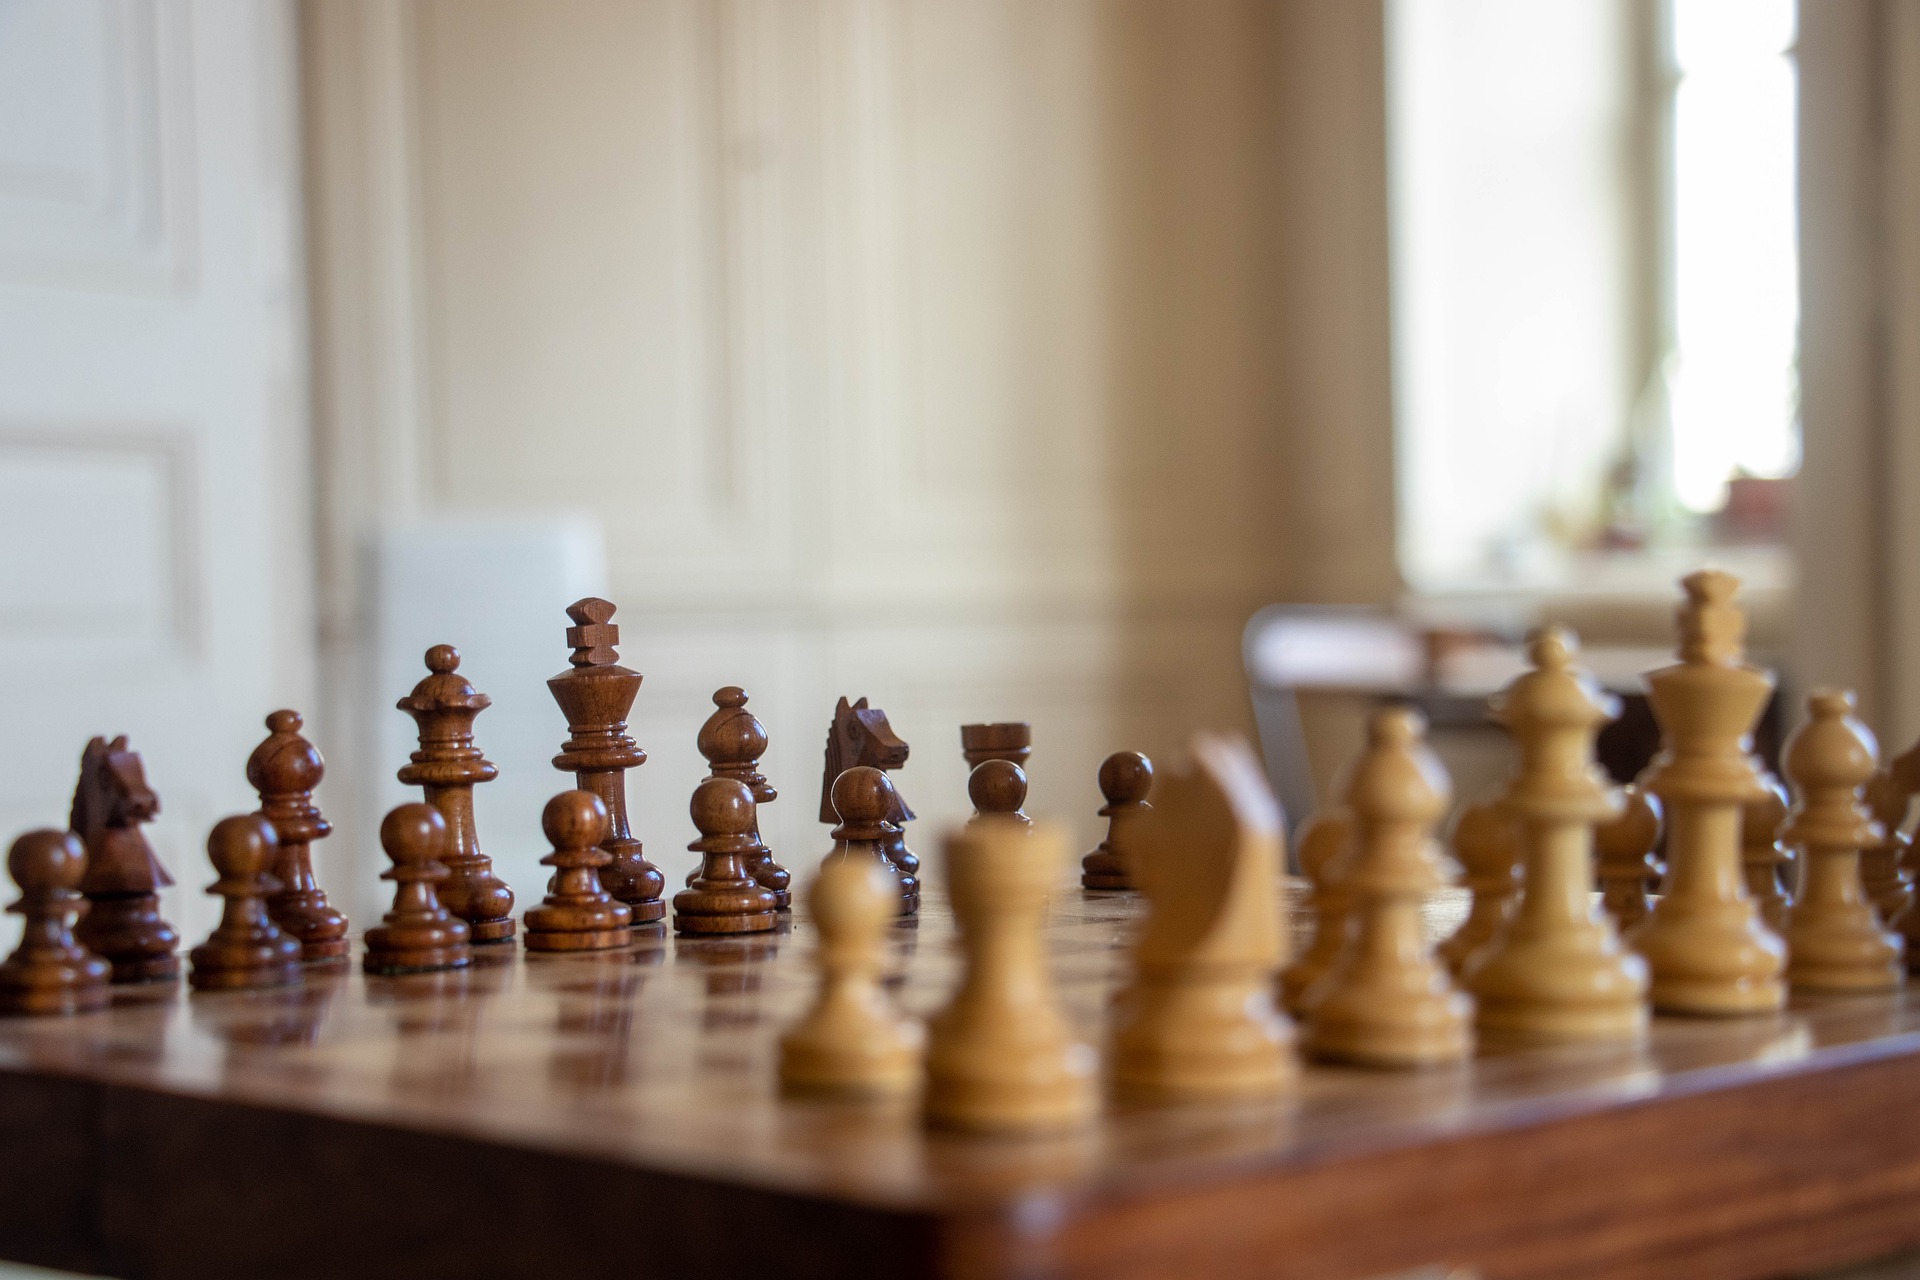 Смоленские налоговики приняли участие в шахматном турнире